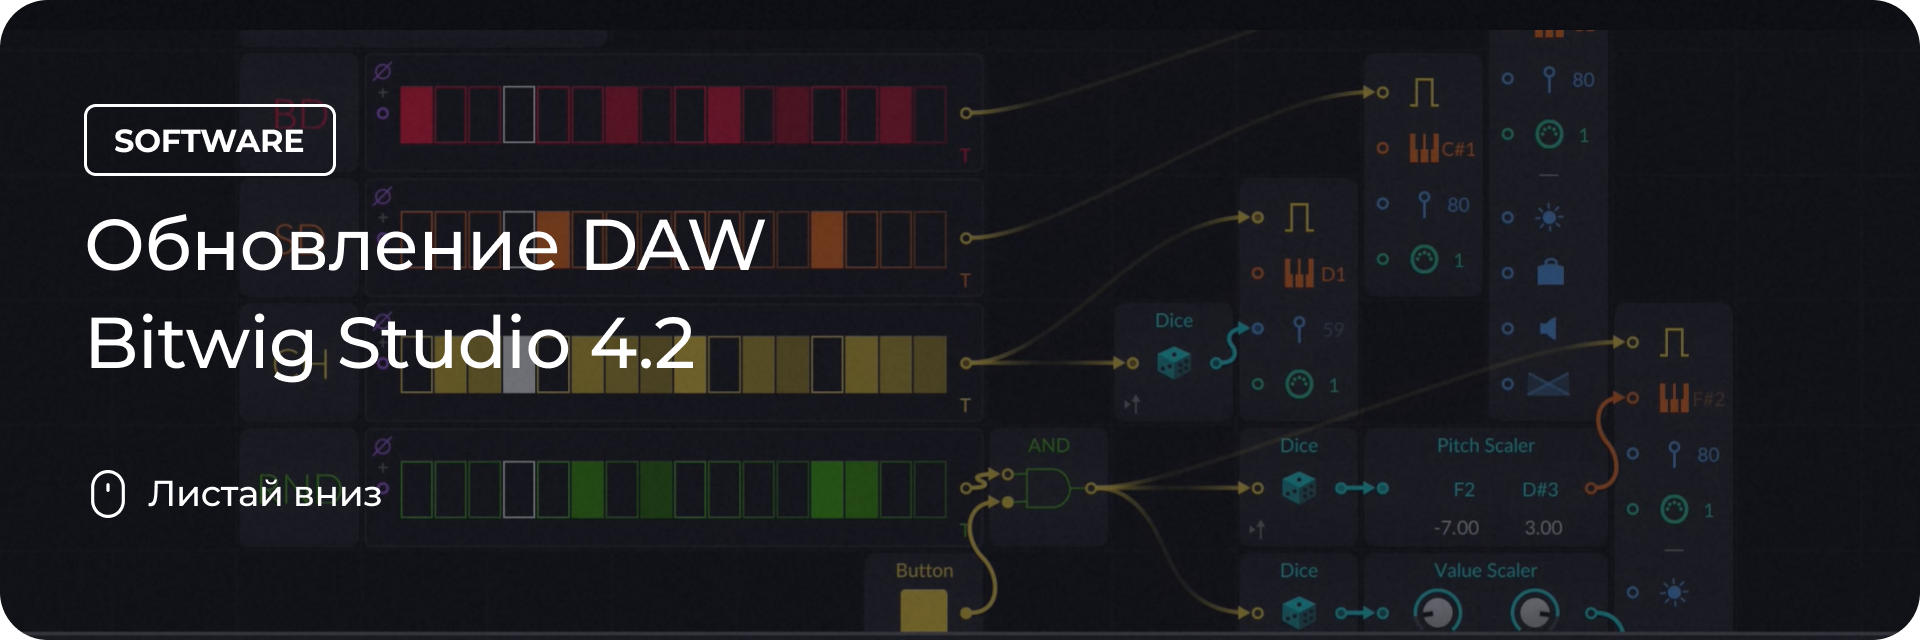 Обновление DAW Bitwig Studio 4.2